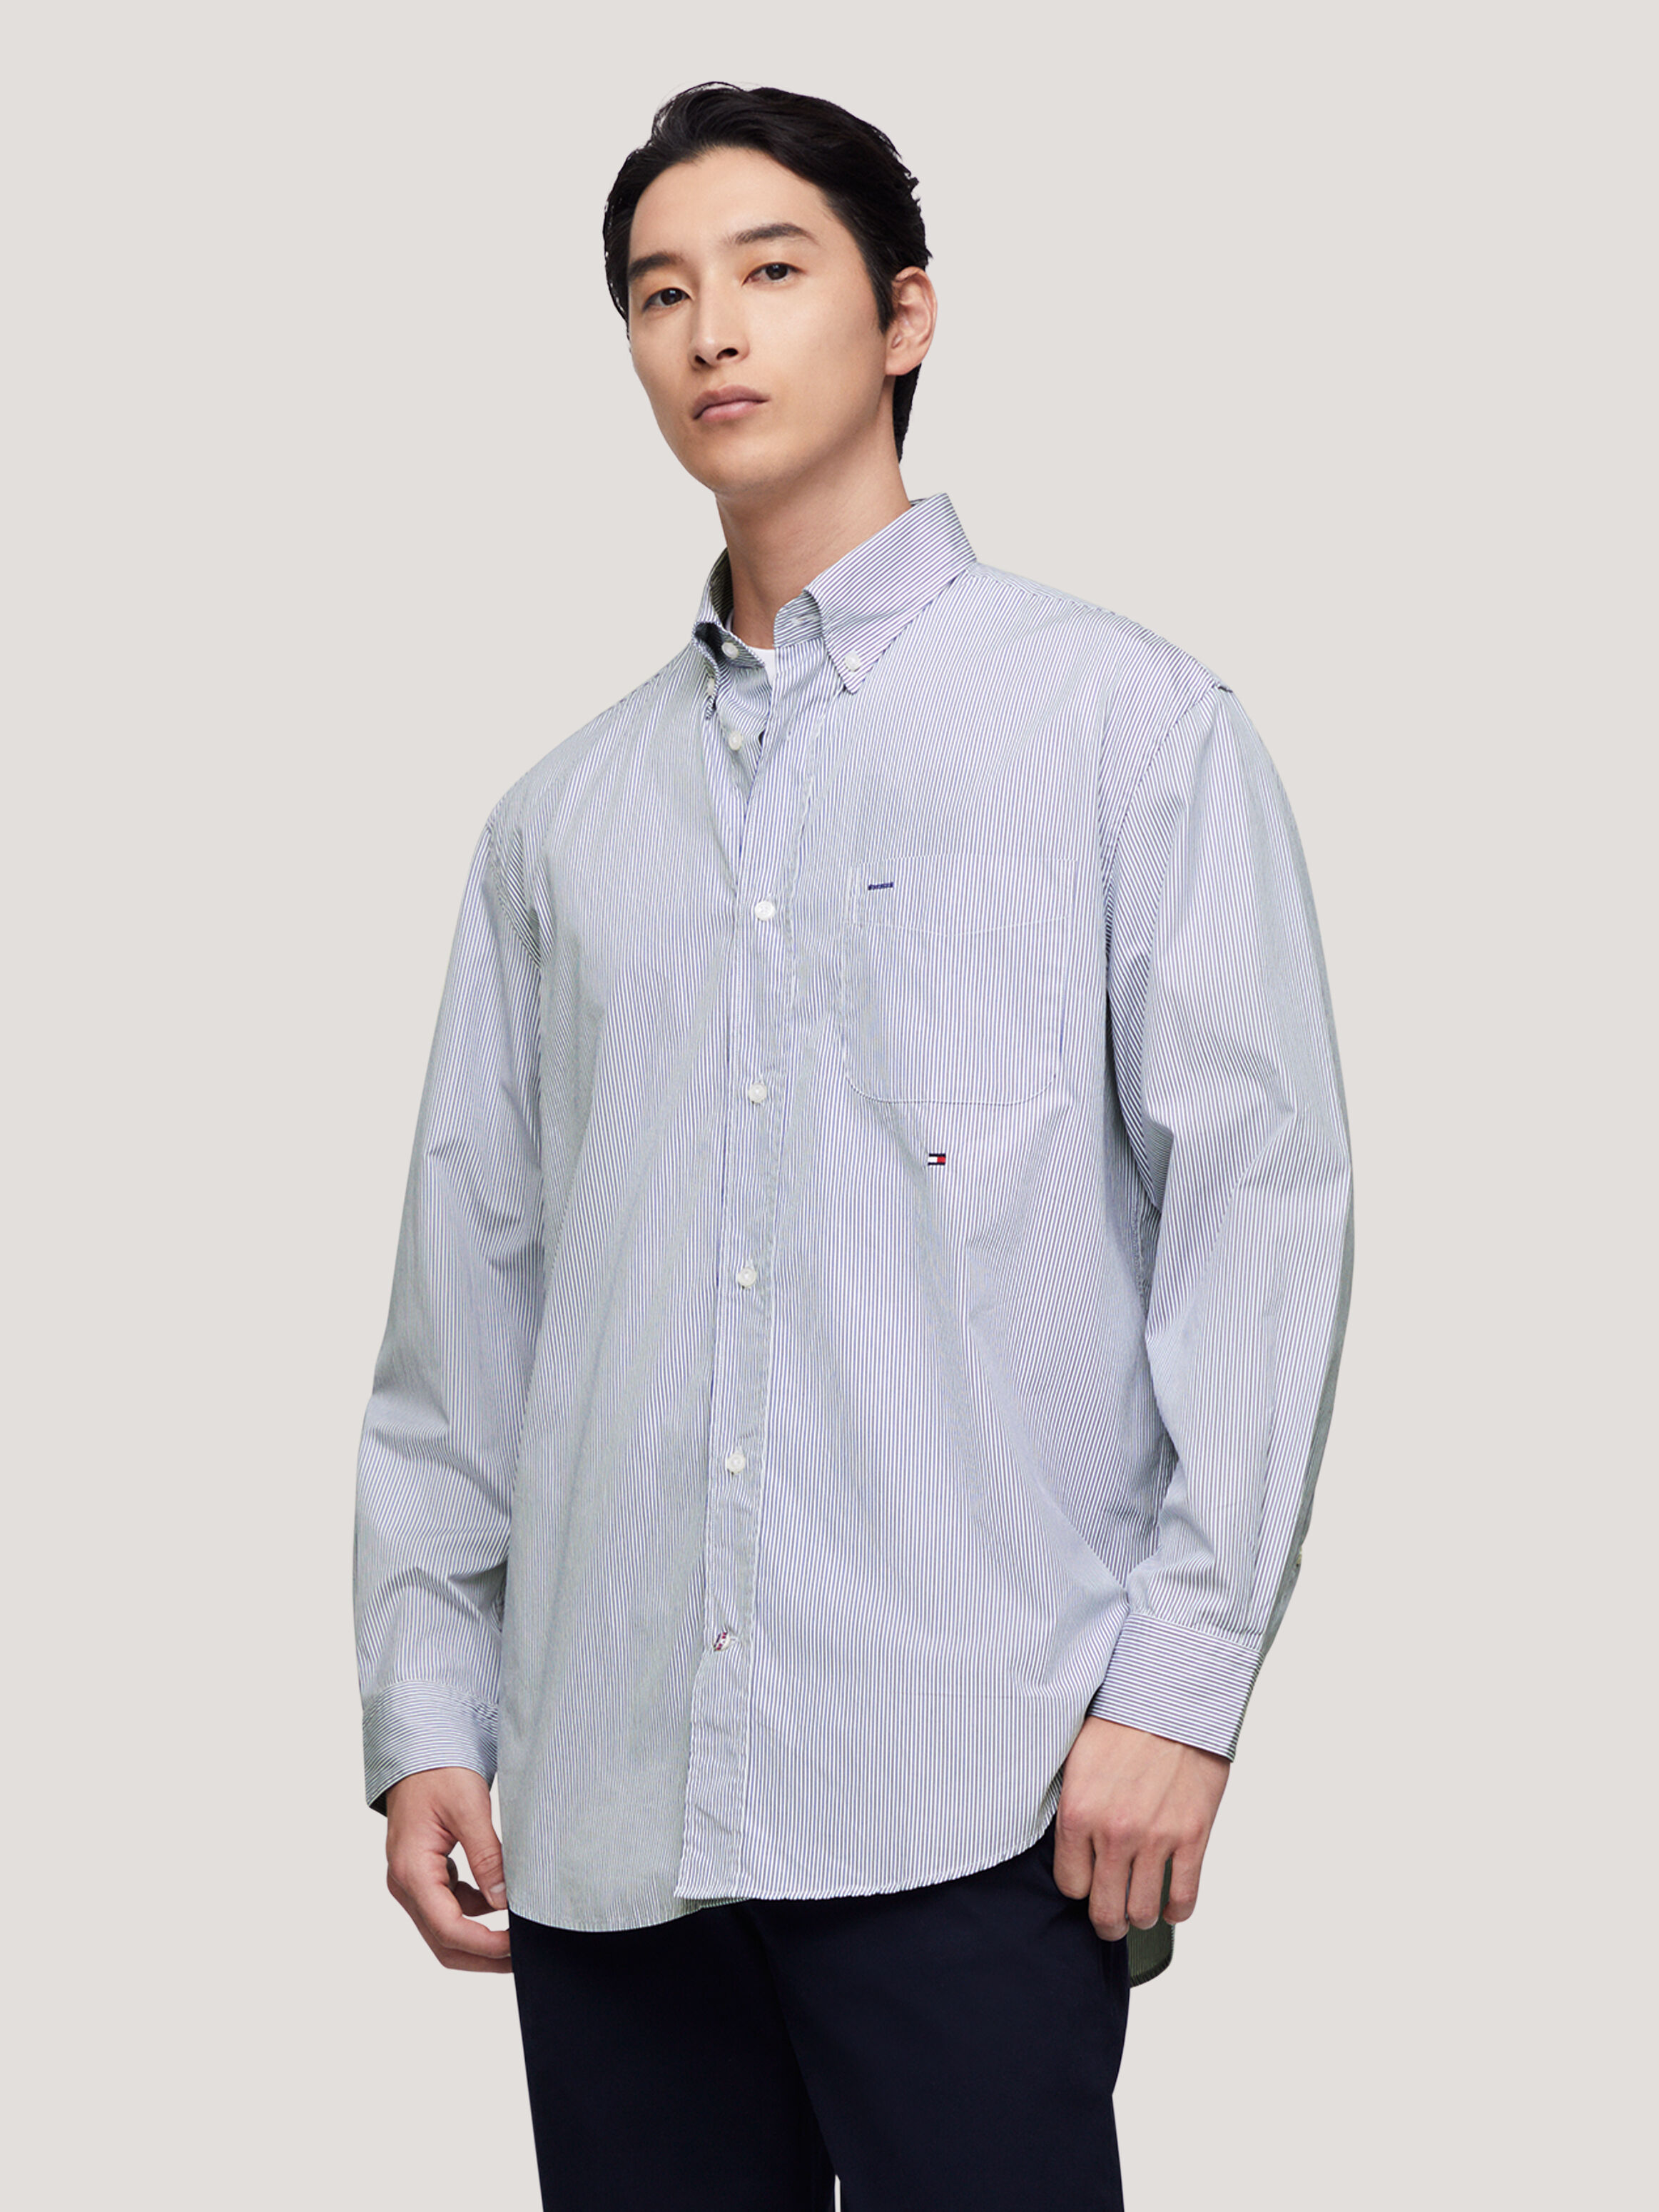 細條紋寬鬆襯衫 Blue / Multi